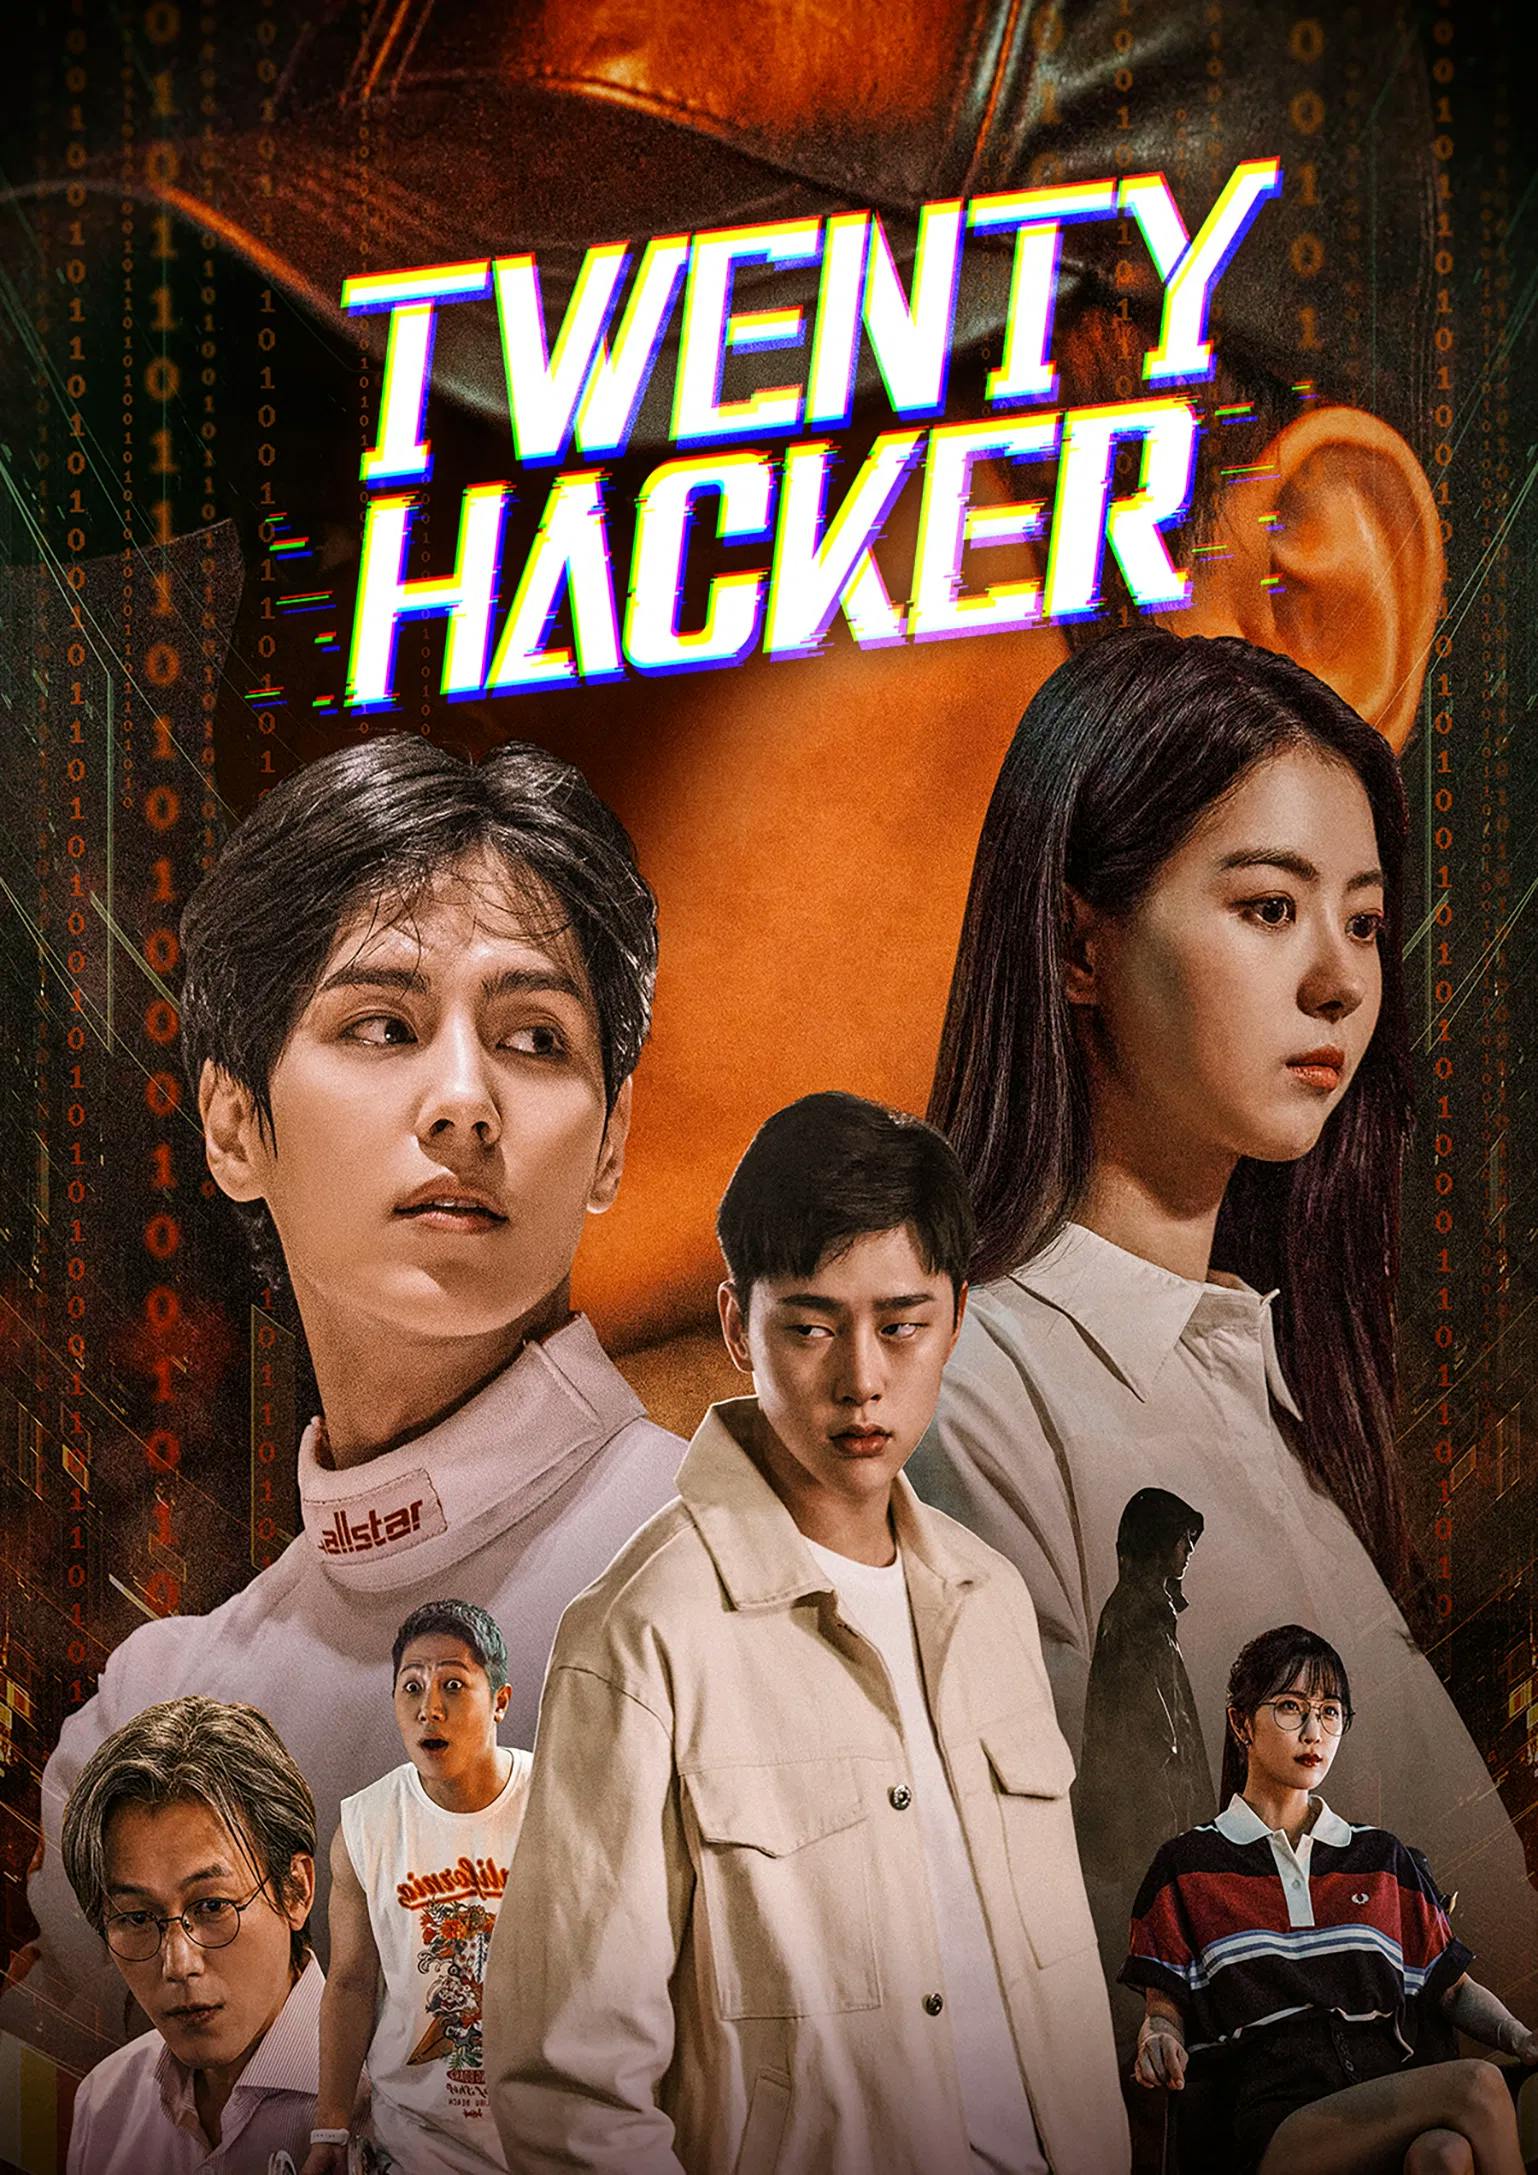 Twenty Hacker poster